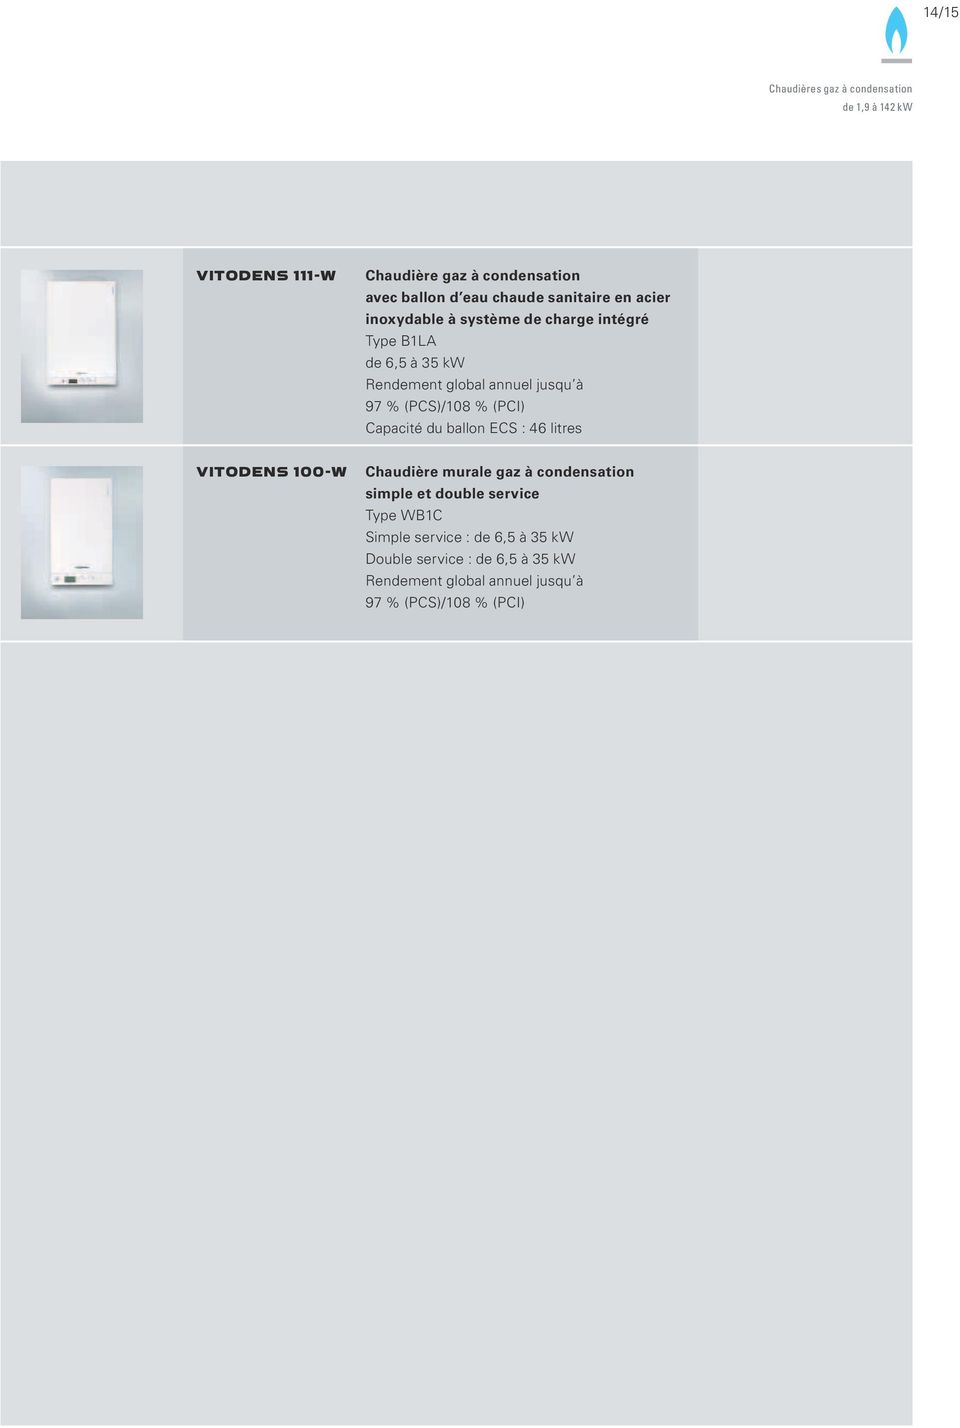 (PCS)/108 % (PCI) Capacité du ballon ECS : 46 litres VITODENS 100-W Chaudière murale gaz à condensation